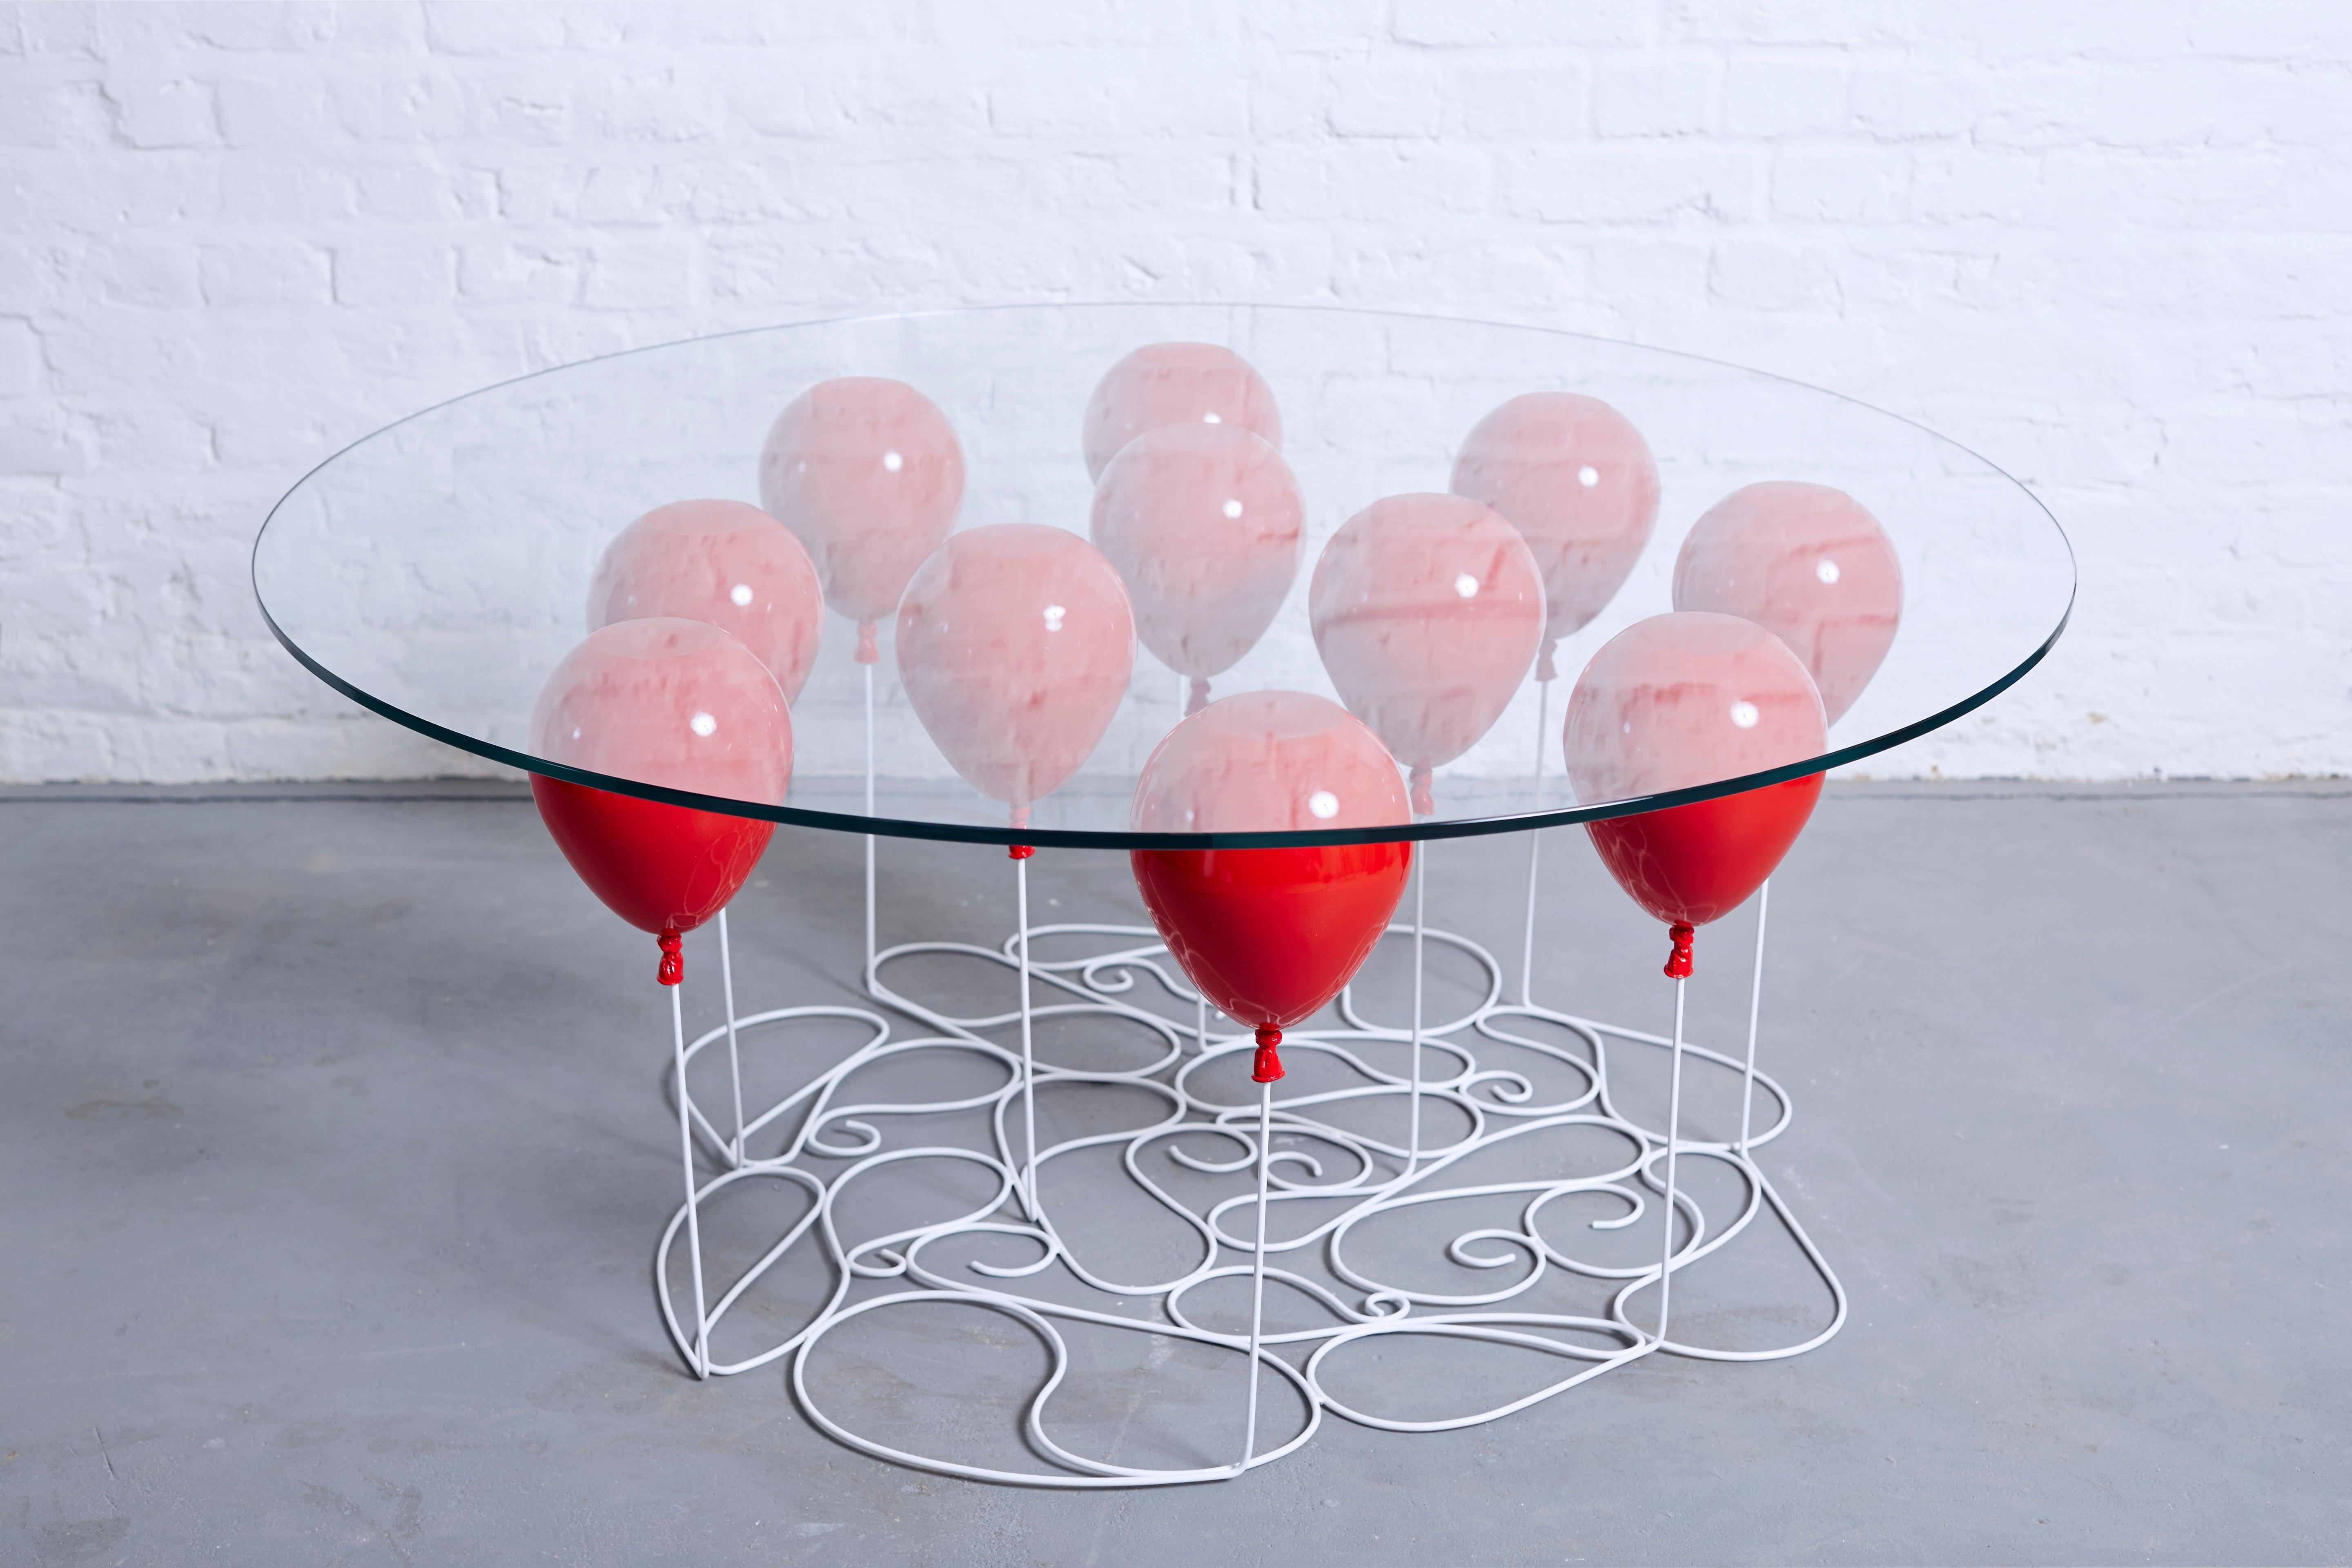 Der UP Balloon Coffee Table ist ein verspieltes Trompe L'Oeil mit goldenen und silbernen Ballons, die die Illusion einer schwebenden Glastischplatte vermitteln. 

Ein aufmunterndes Design des renommierten britischen Designers Christpher Duffy, das